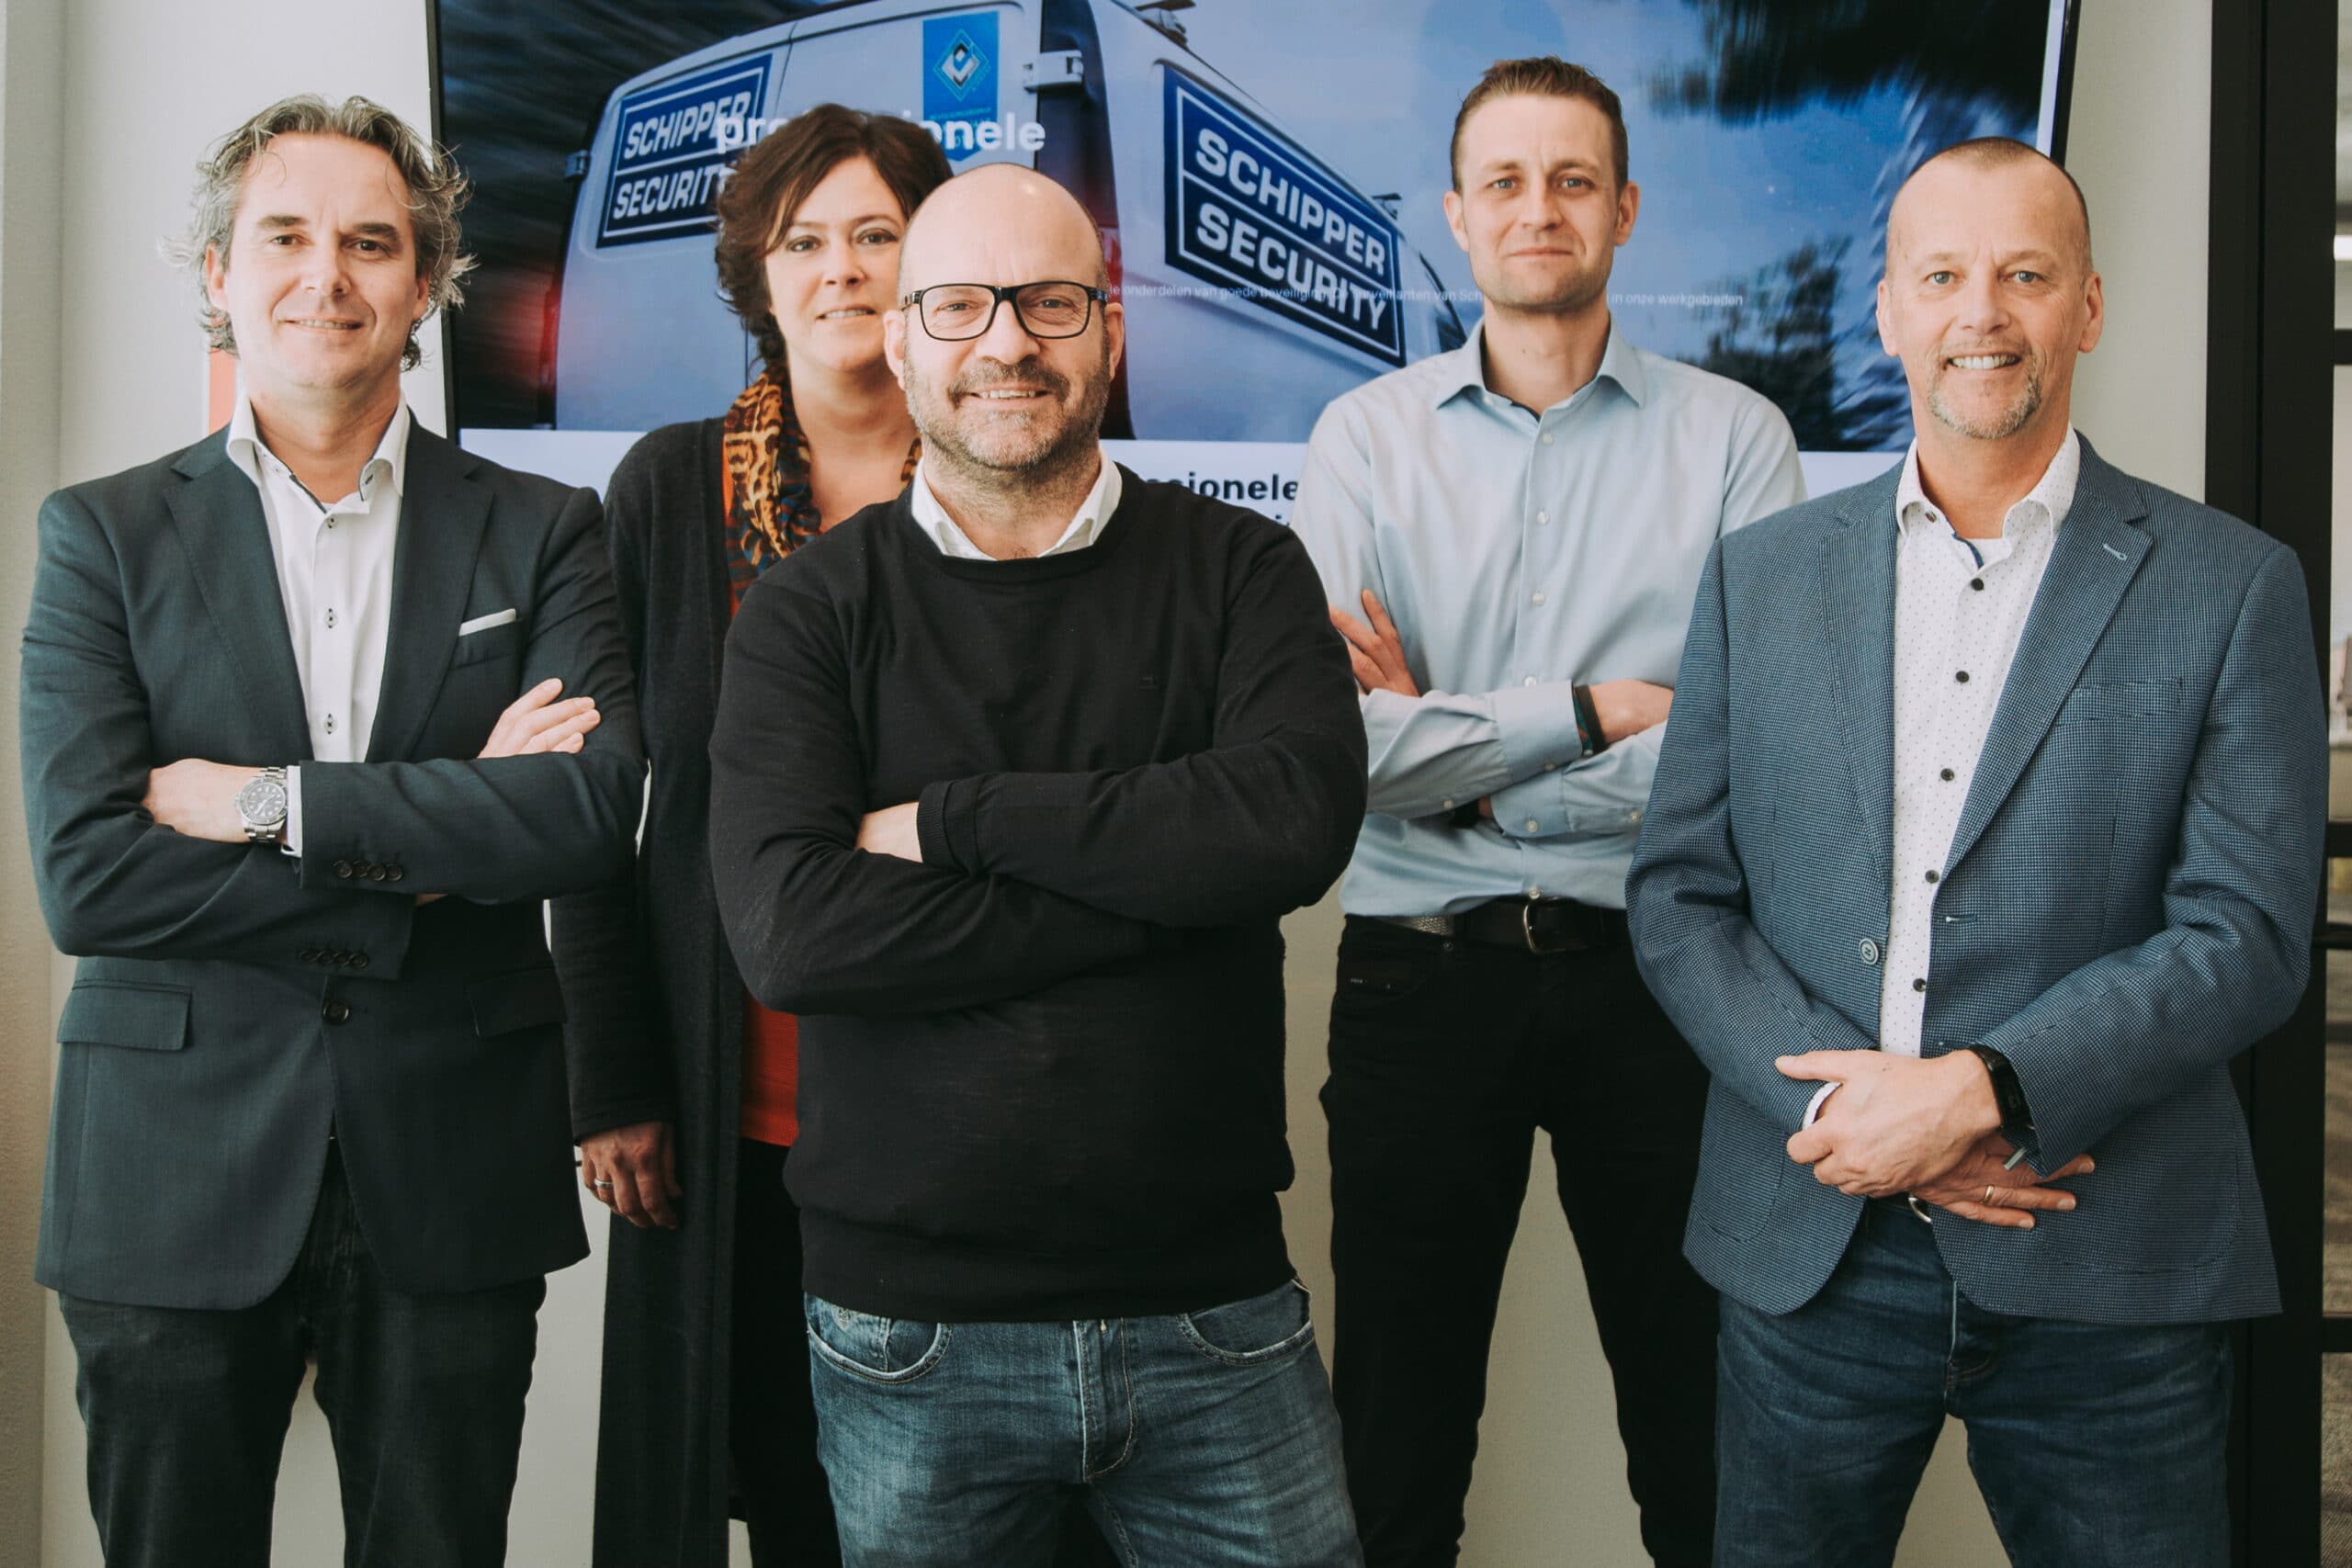 Management team Schipper Security B.V.. Van links naar rechts: Michiel van der Wal, Jacqueline Gerritsen, Alex Schipper,Jeroen Jonkers, Hans Brink